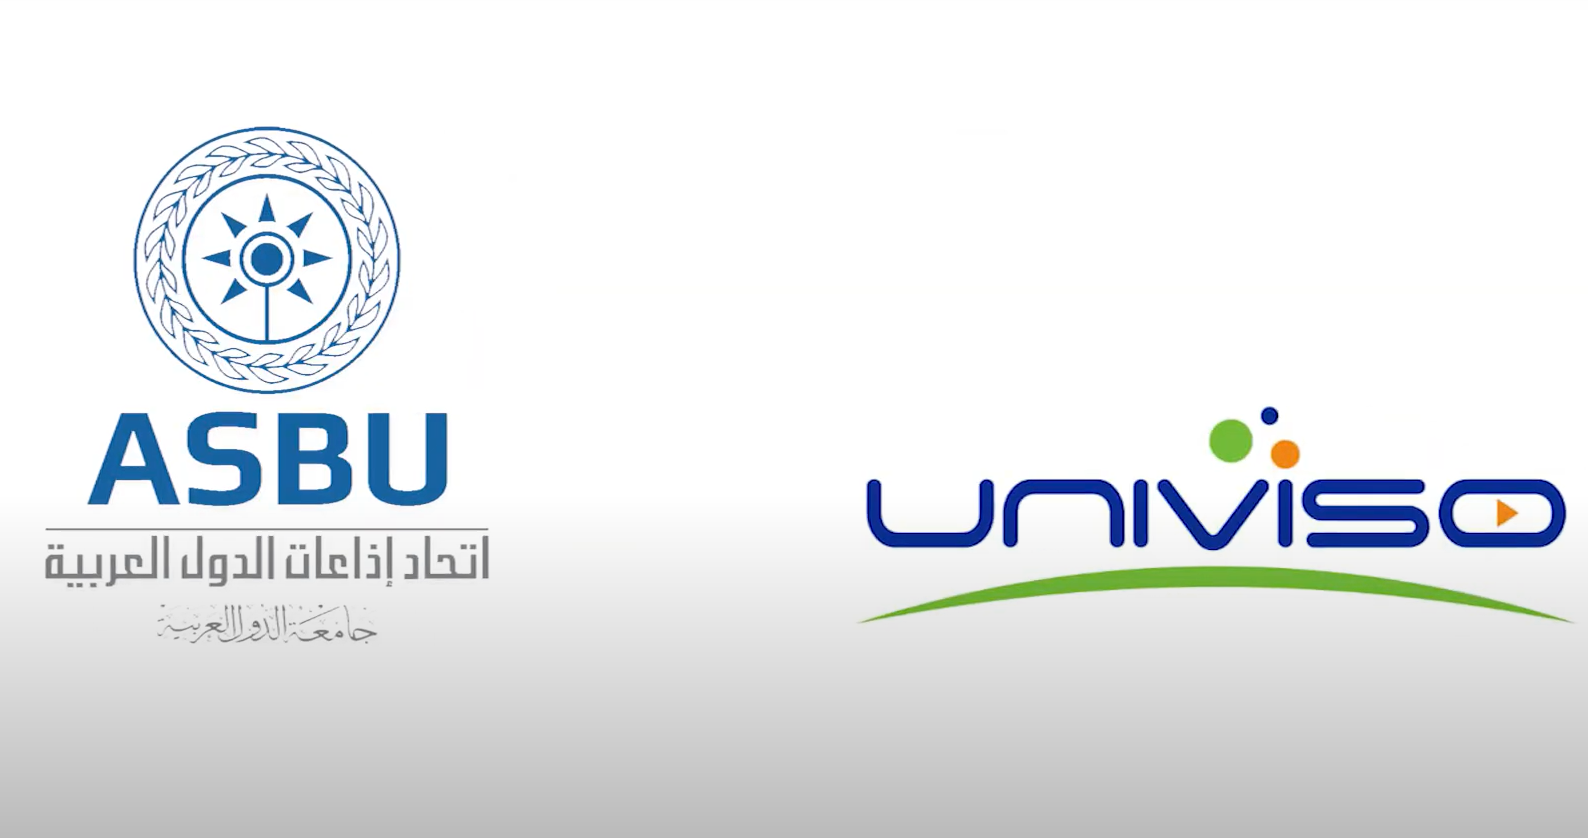 Univiso-ASBU event in Tunisia,12-15 June 2023